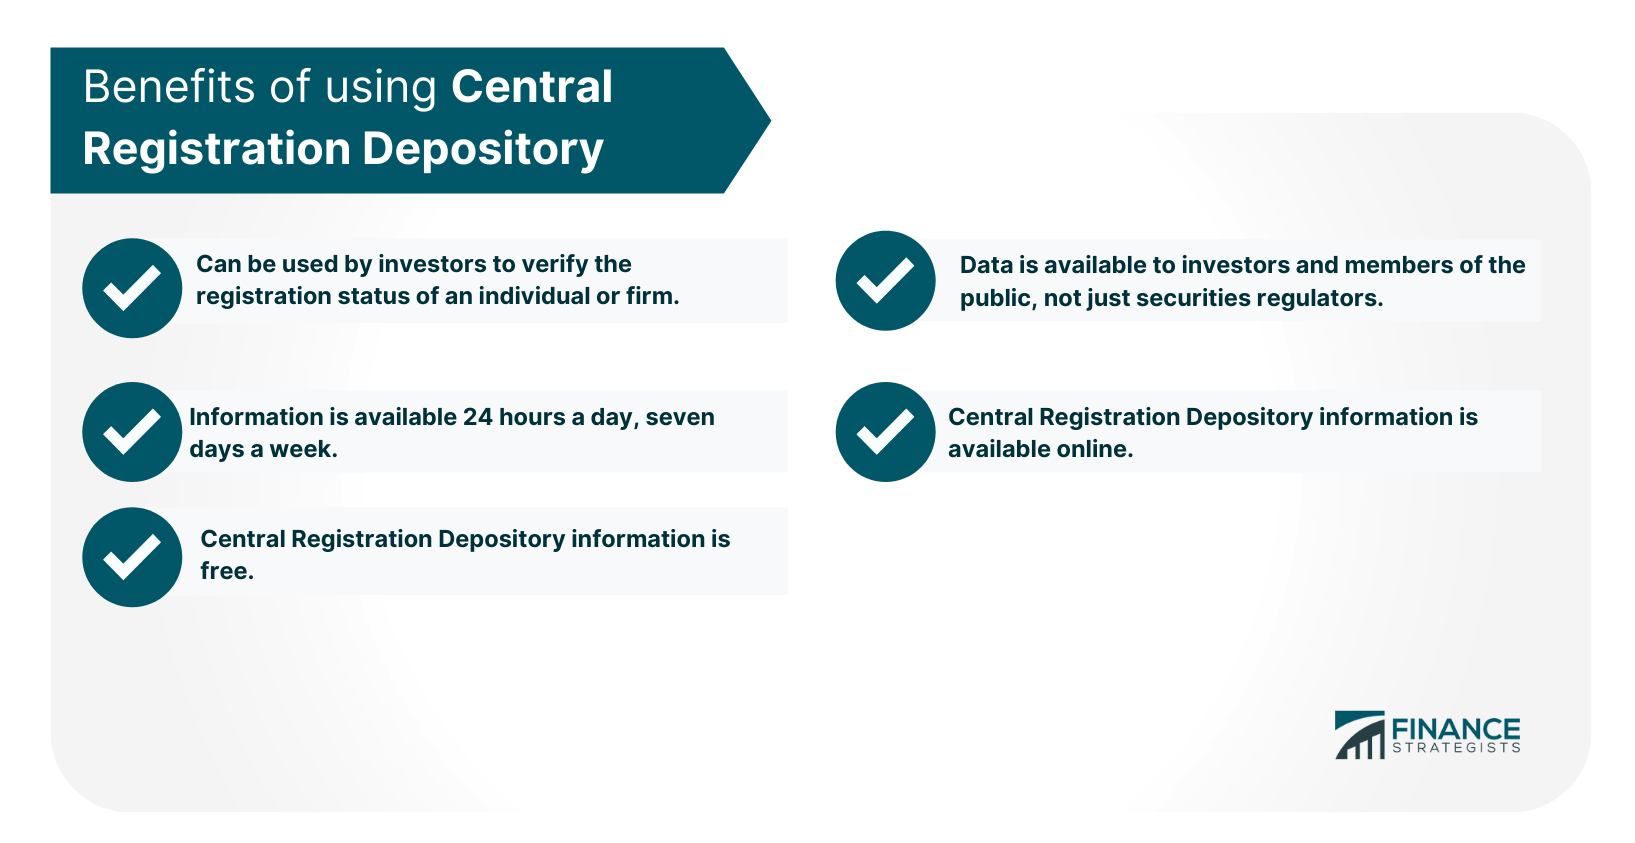 Depositario de Registro Central (CRD)